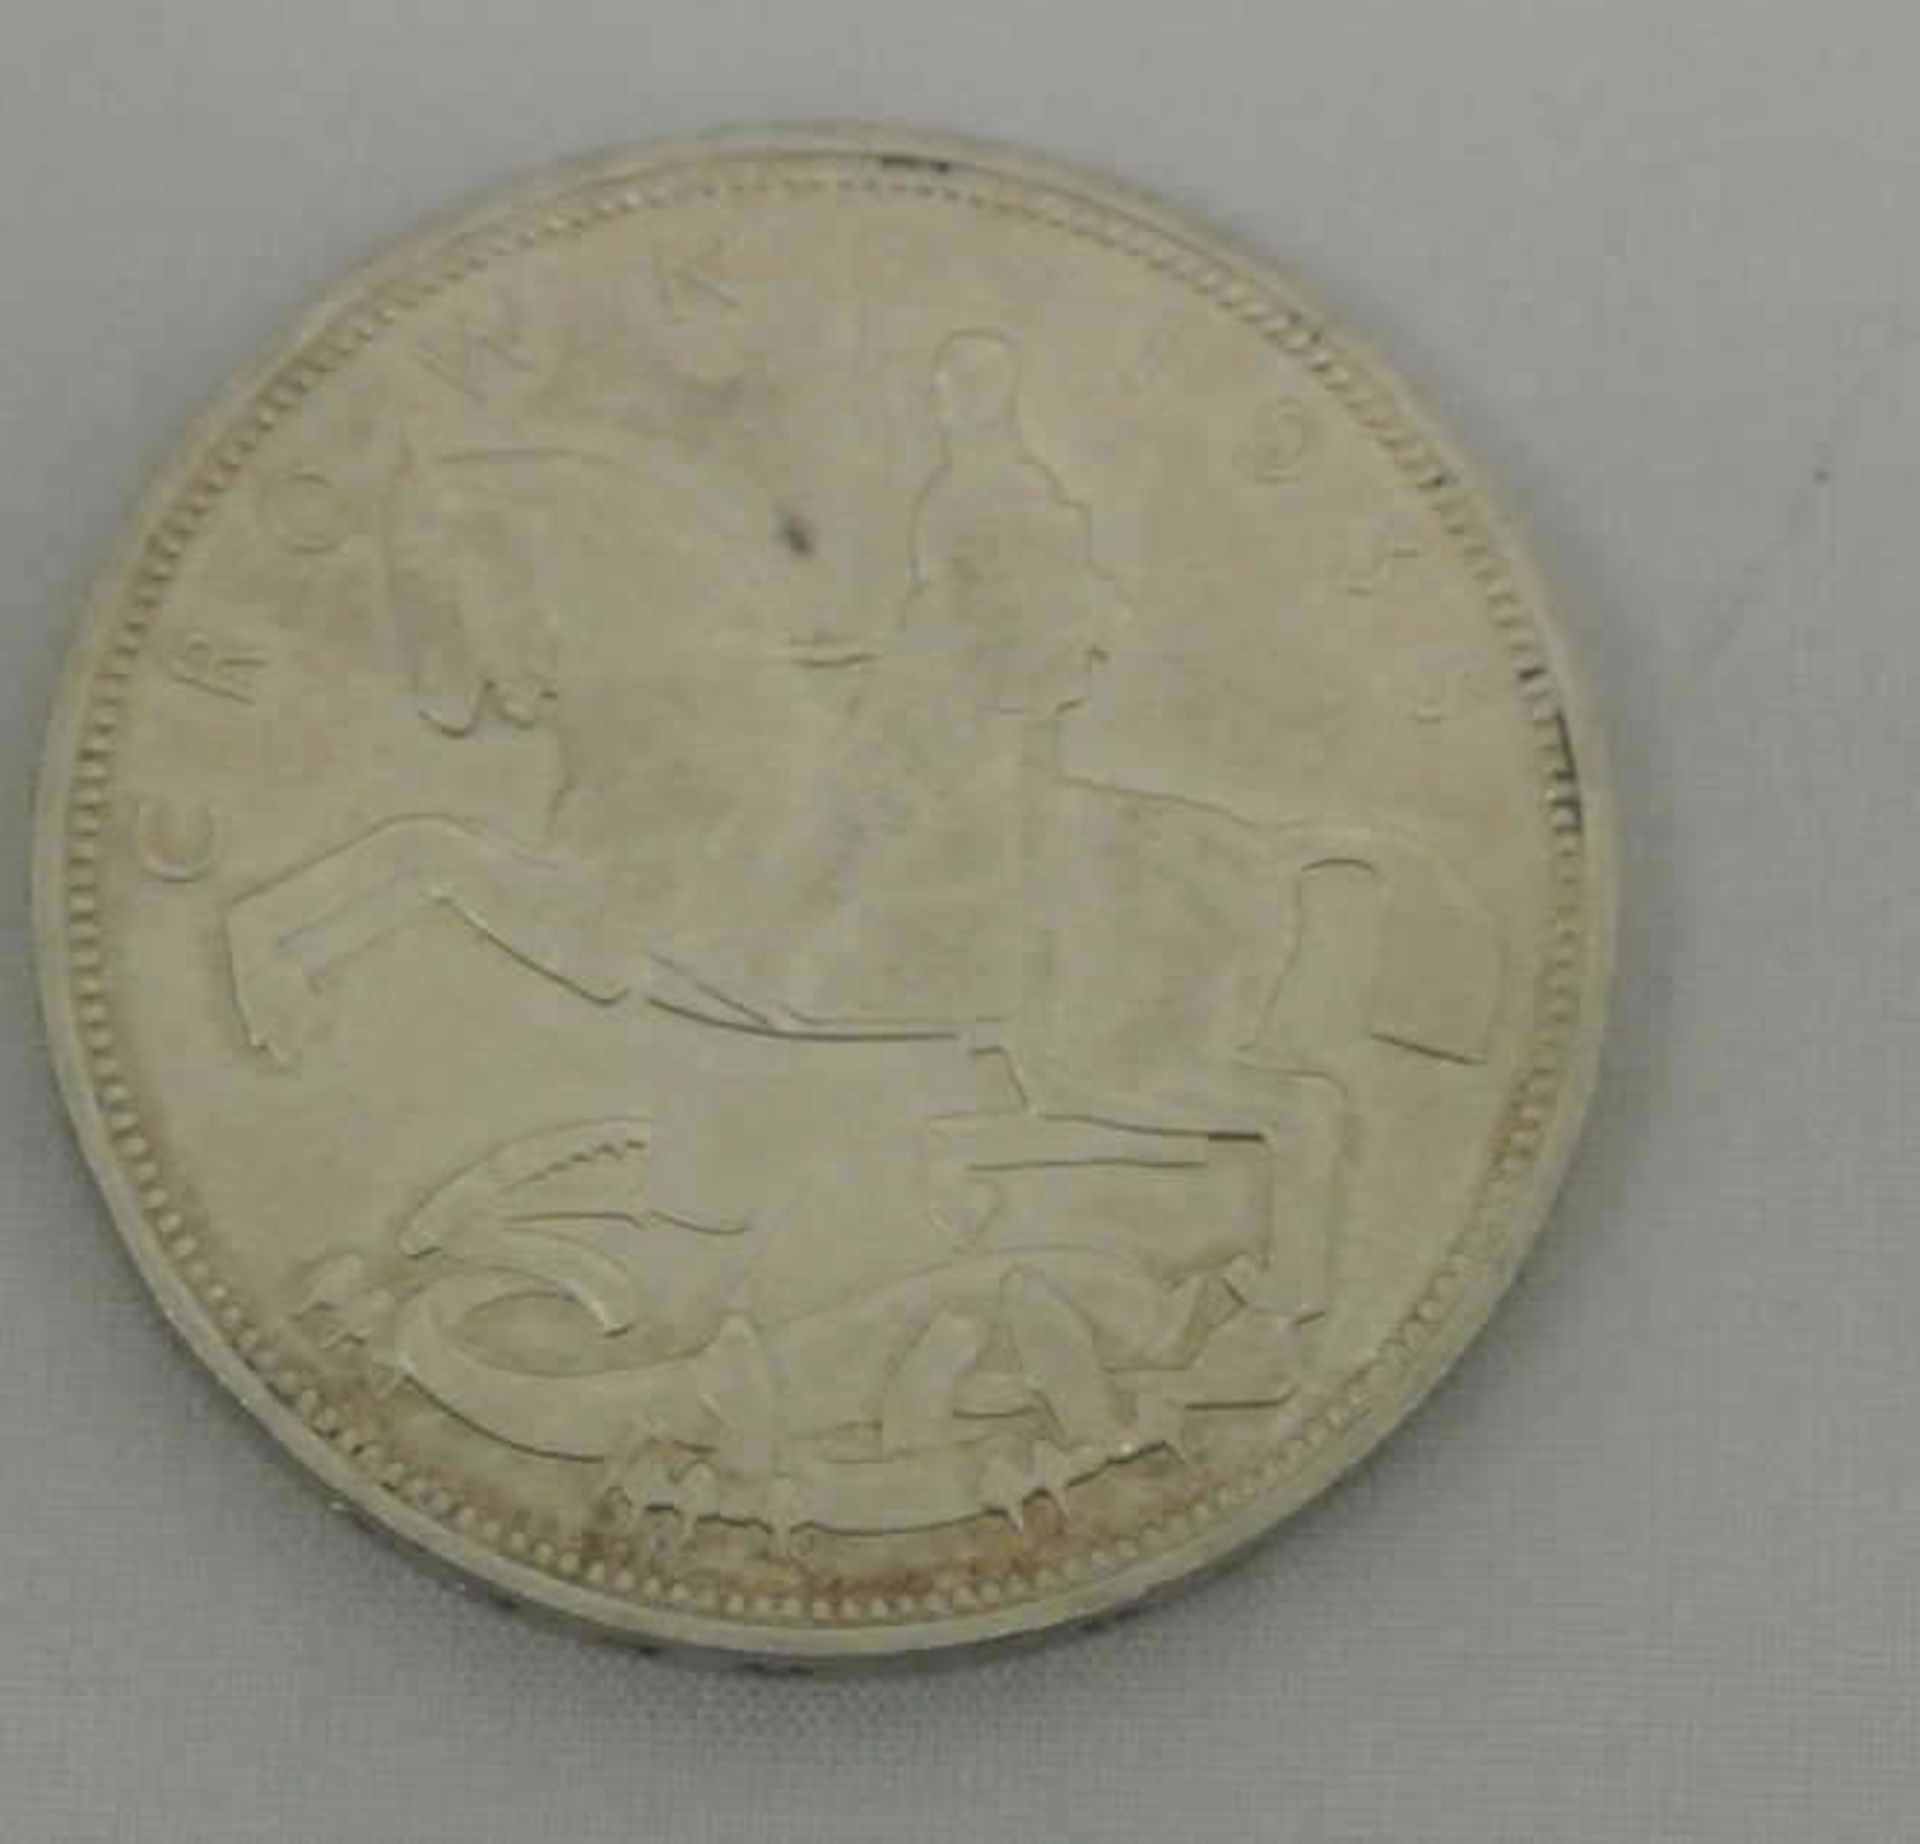 England, 1 Crown 5 Shilling 1935 England, Regierungsjubiläum, Silber, Gewicht ca. 28,2 gr